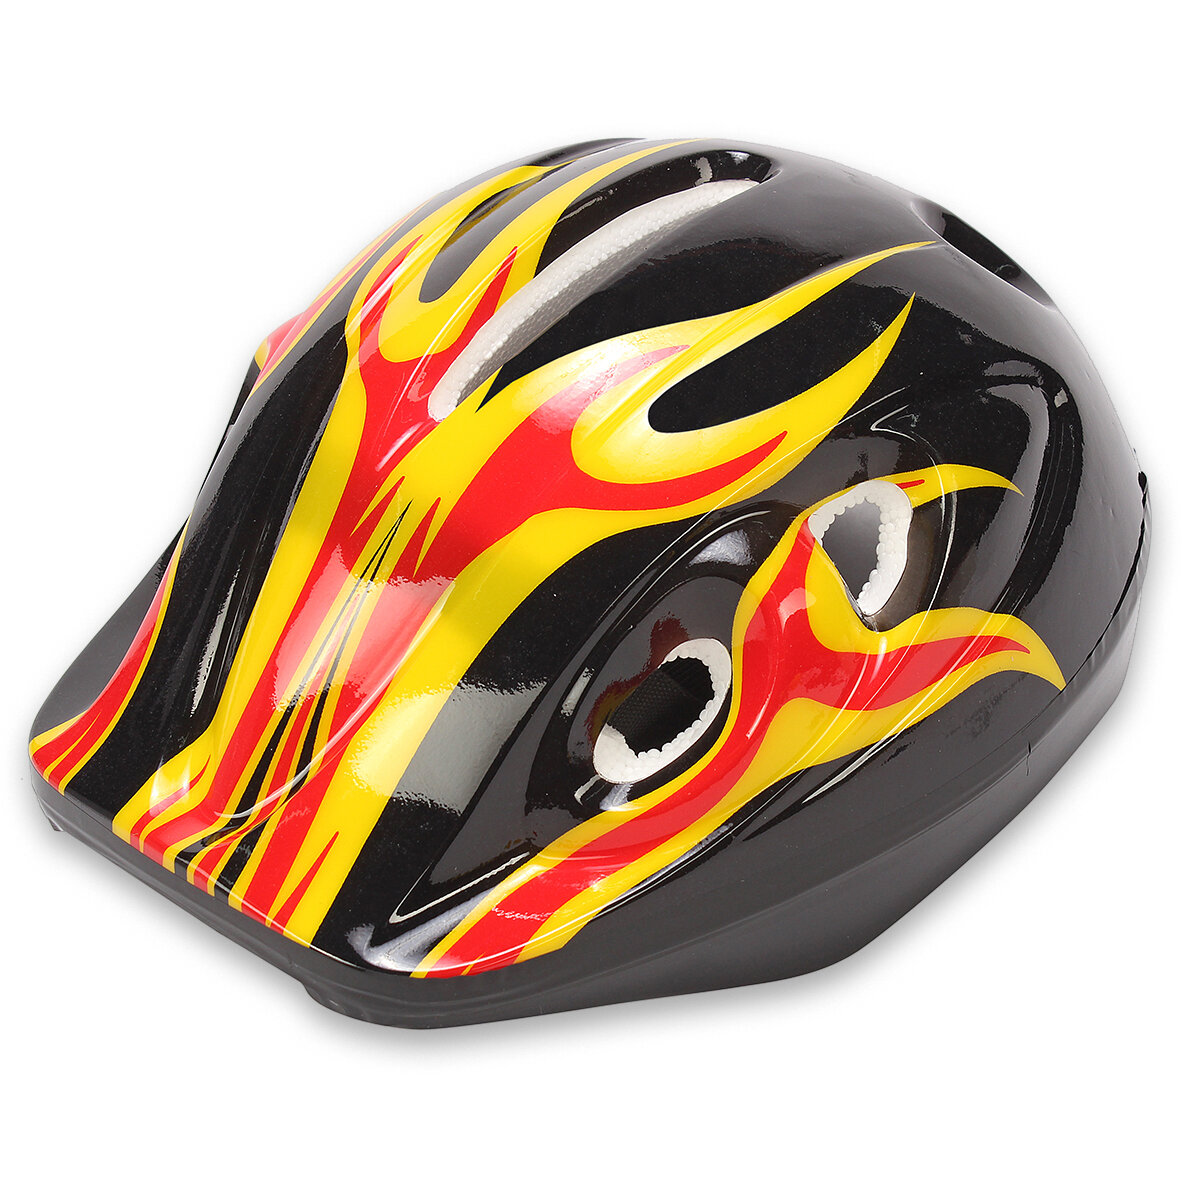 Шлем детский защитный для катания на велосипеде, самокате, роликах, скейтборде, обхват 52-54 см, размер М, 25х20х14 см, черный с оранжевым – 1 шт